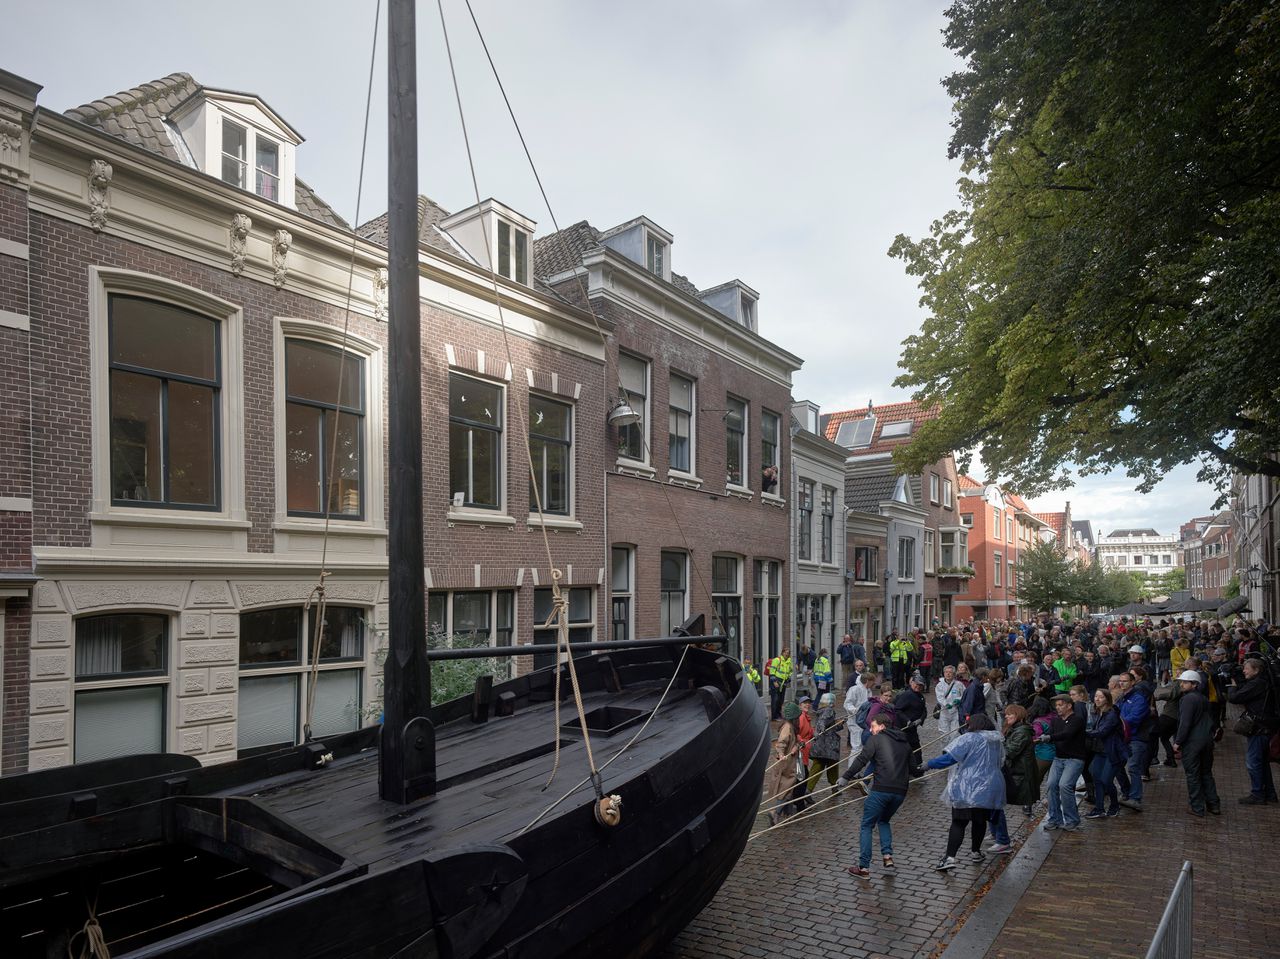 In Dordrecht werd zaterdag door tientallen bewoners een verbrande houten boot door de stad gesleept. Doordat de route door nauwe straten voert, gaat de boot kapot: dat is de bedoeling van kunstenaar Edward Clydesdale Thomson.